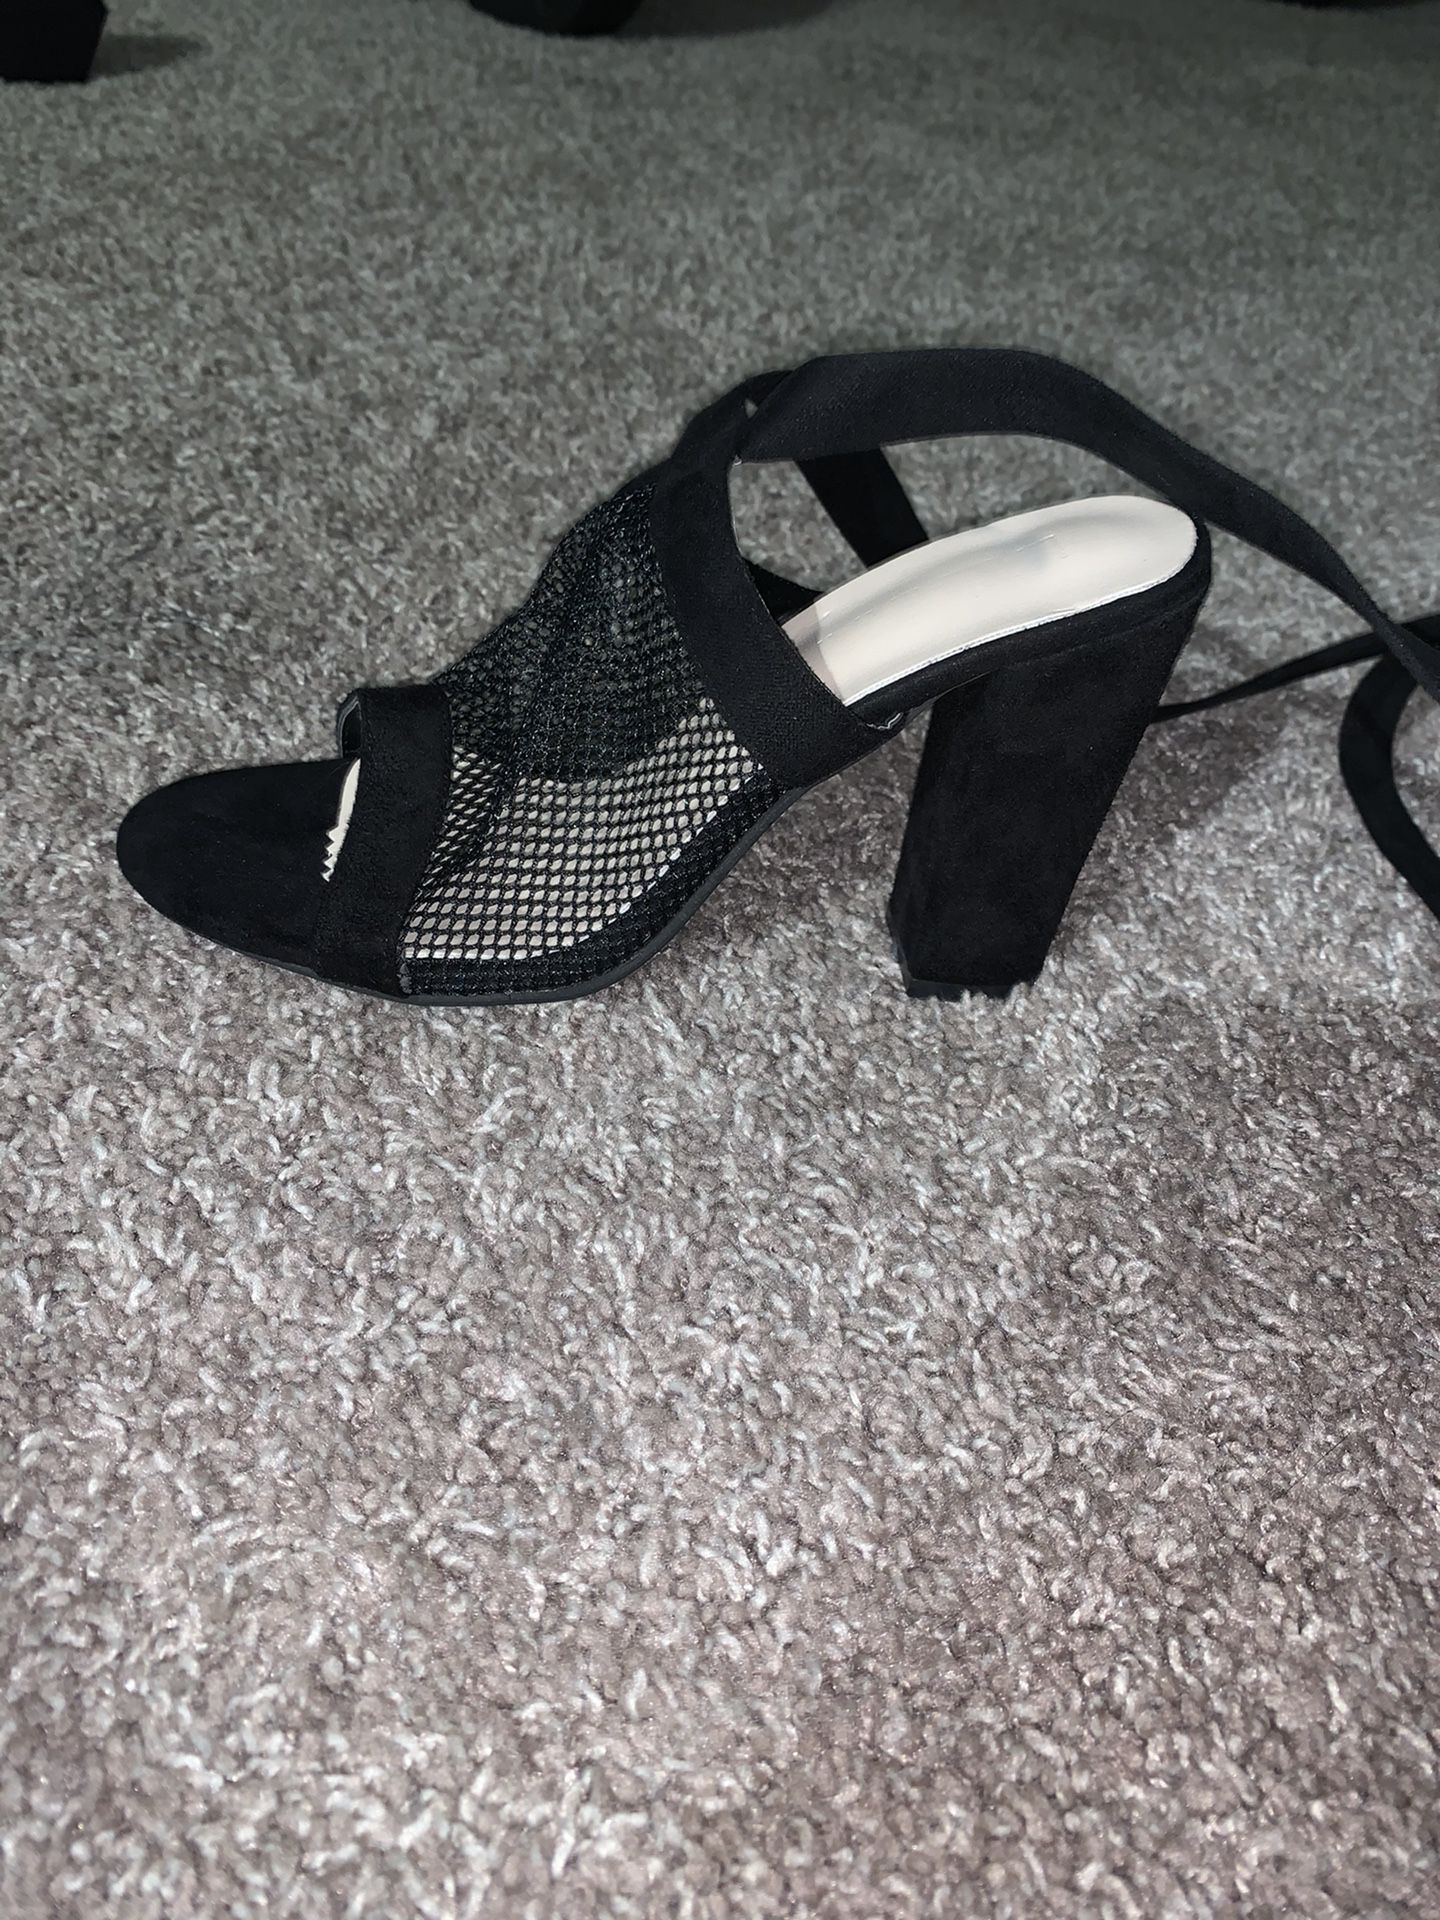 Black heels women size 8